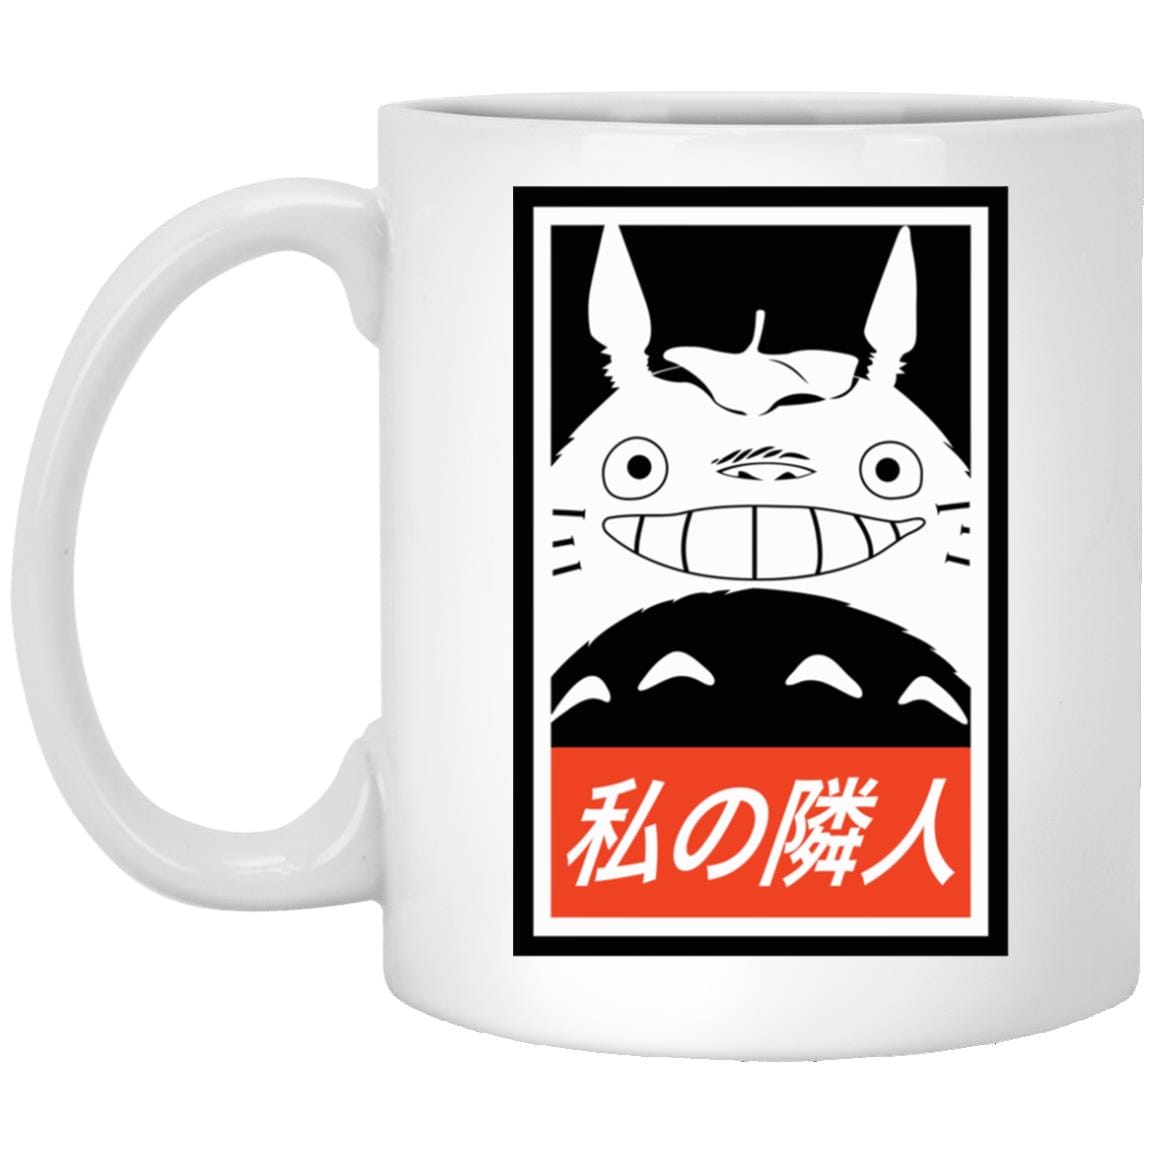 Smiling Totoro Mug